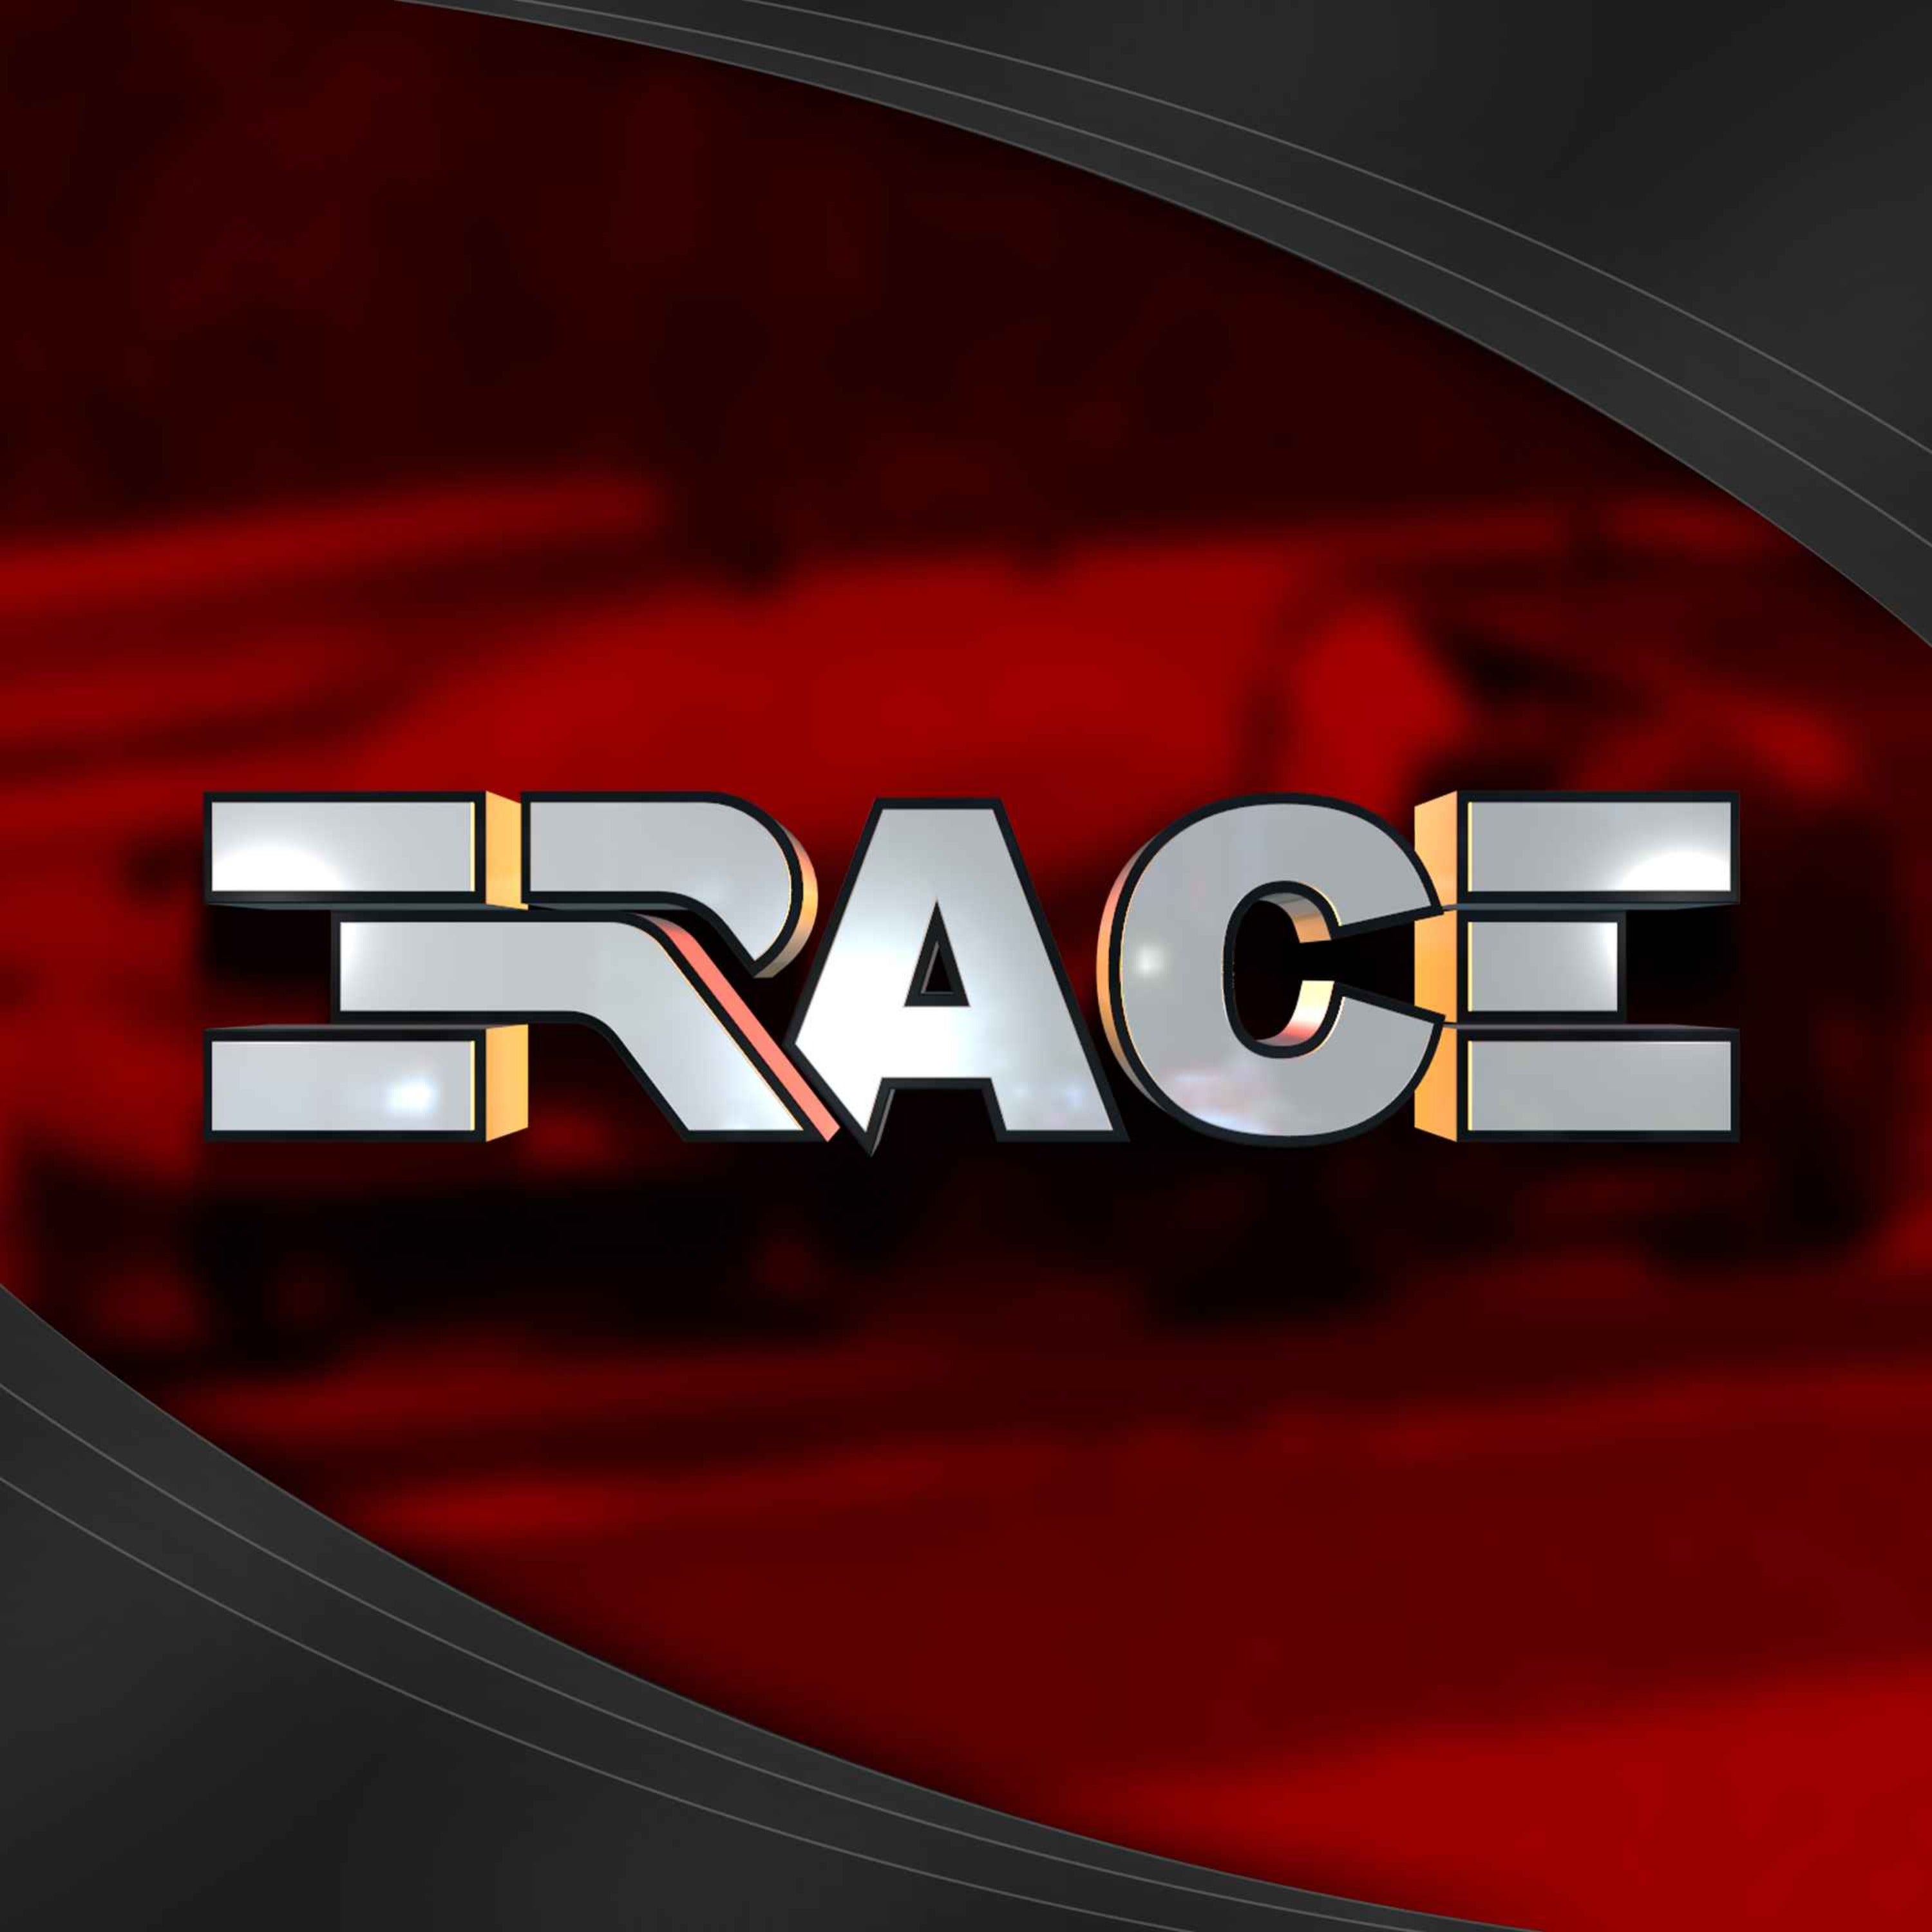 E-Race S02E05